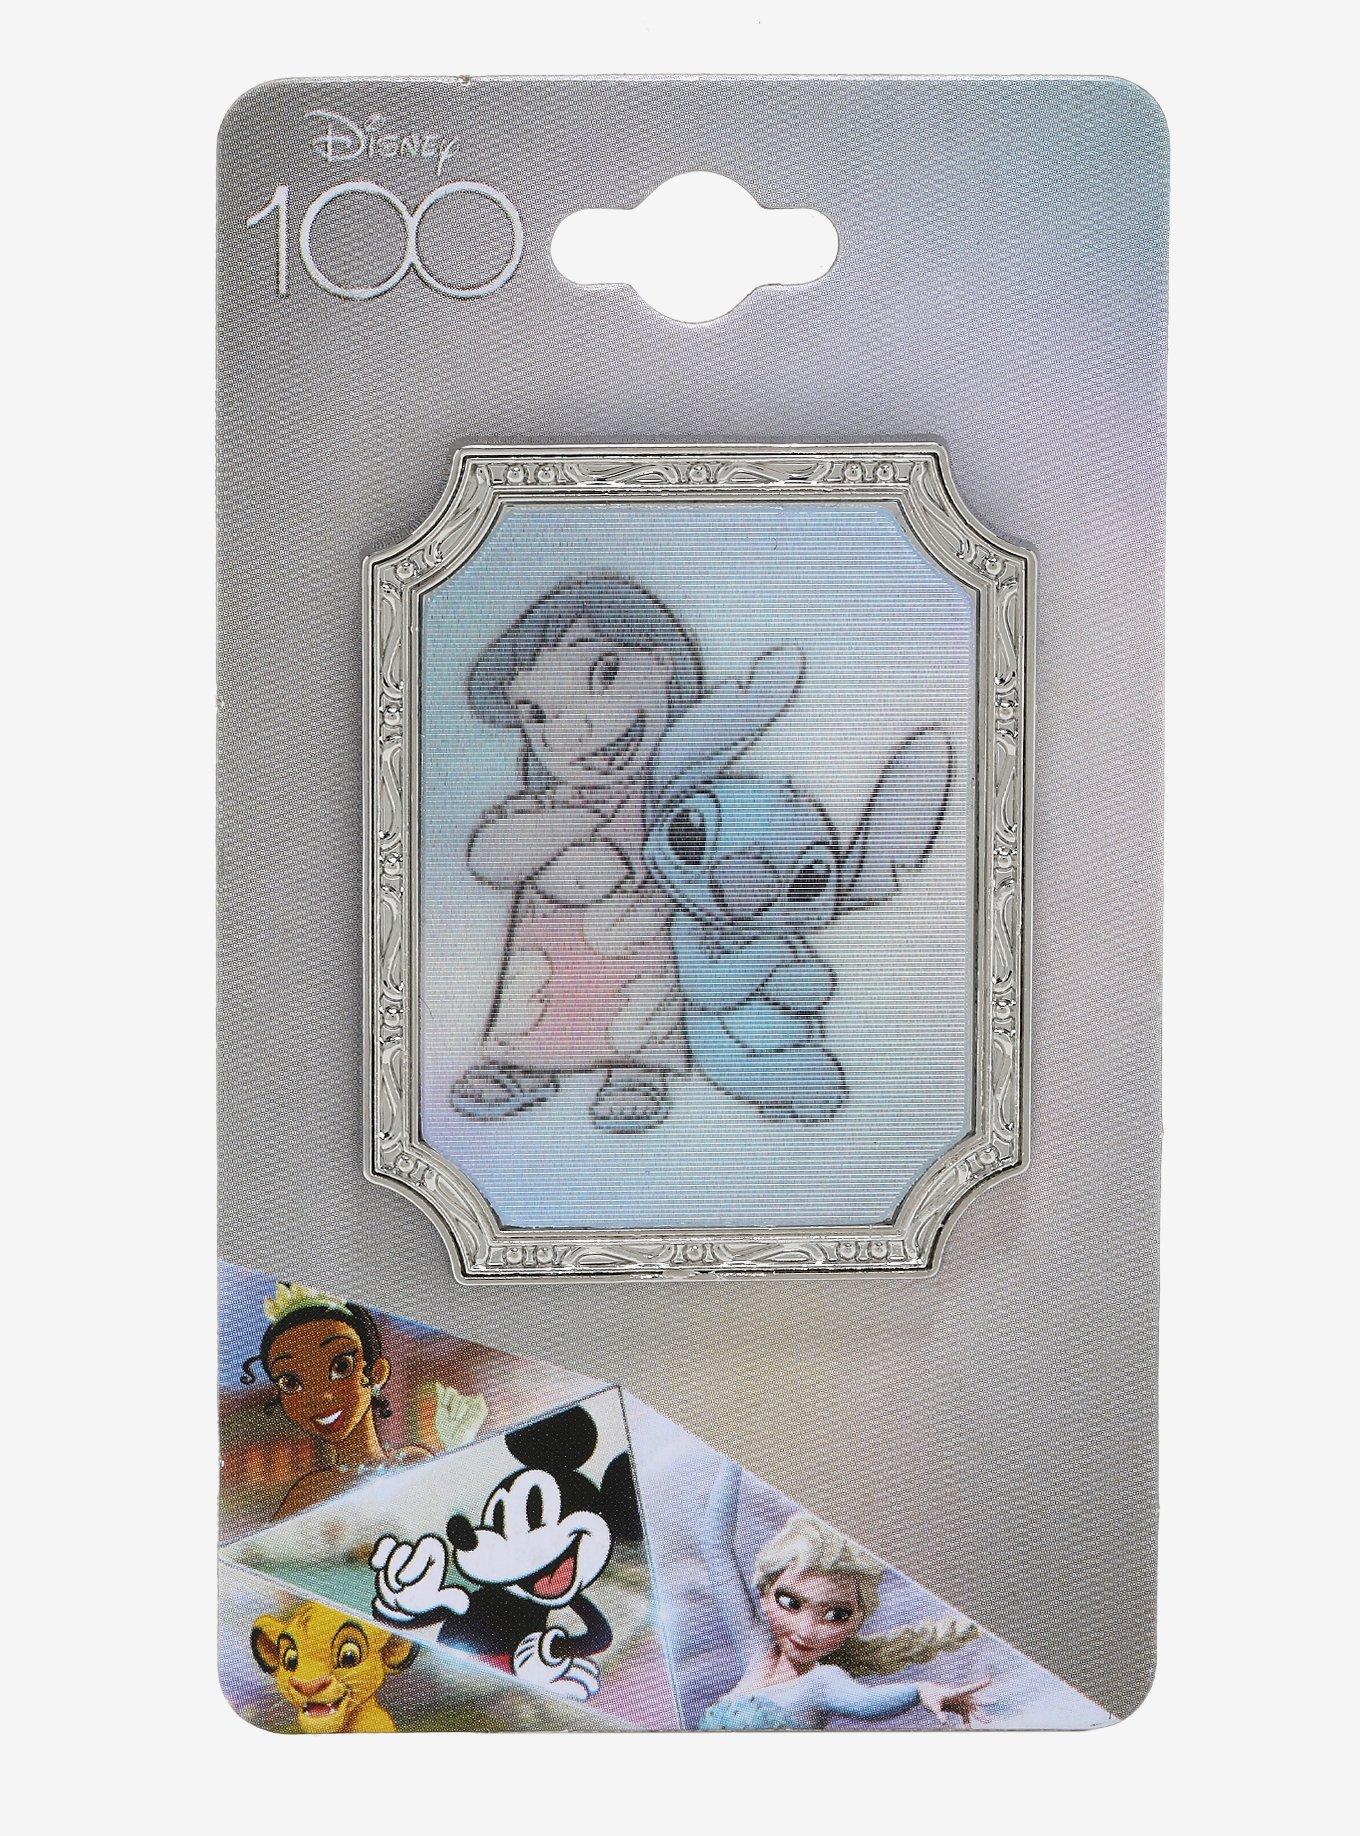 Loungefly Disney100 Lilo & Stitch Sketch Lenticular Pin - BoxLunch